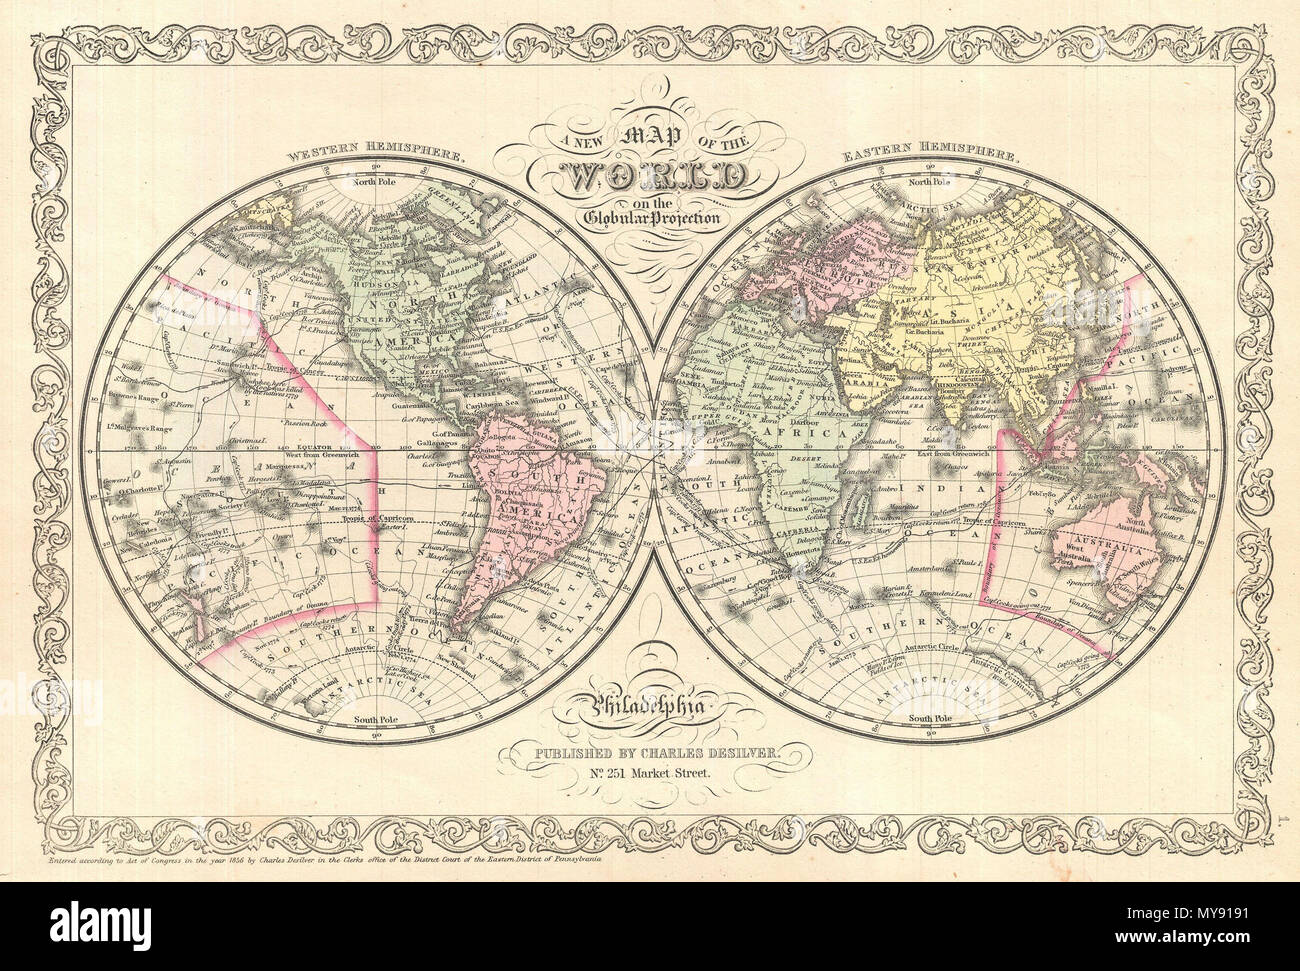 . Una nuova mappa del mondo sulla proiezione globulare. Inglese: un raffinato esempio di Charles Desilver's 1856 emisfero doppia mappa del mondo. Copre il mondo intero con codifica dei colori secondo i continenti. La mappa mostra le recenti scoperte in Antartide come pure i percorsi dei vari esploratori di spicco tra cui Cook, Gore, e gli Stati Uniti Esplorare la spedizione. Desilver ha iniziato il rilascio di questa mappa nel 1856 quando ha acquisito S. A. Mitchell's copyright e le lastre di stampa. Desilver's cambia a Mitchell's piastre sono in gran parte limitata alla sua aggiunta della griglia confine visto qui. Tuttavia la maggior parte s Foto Stock